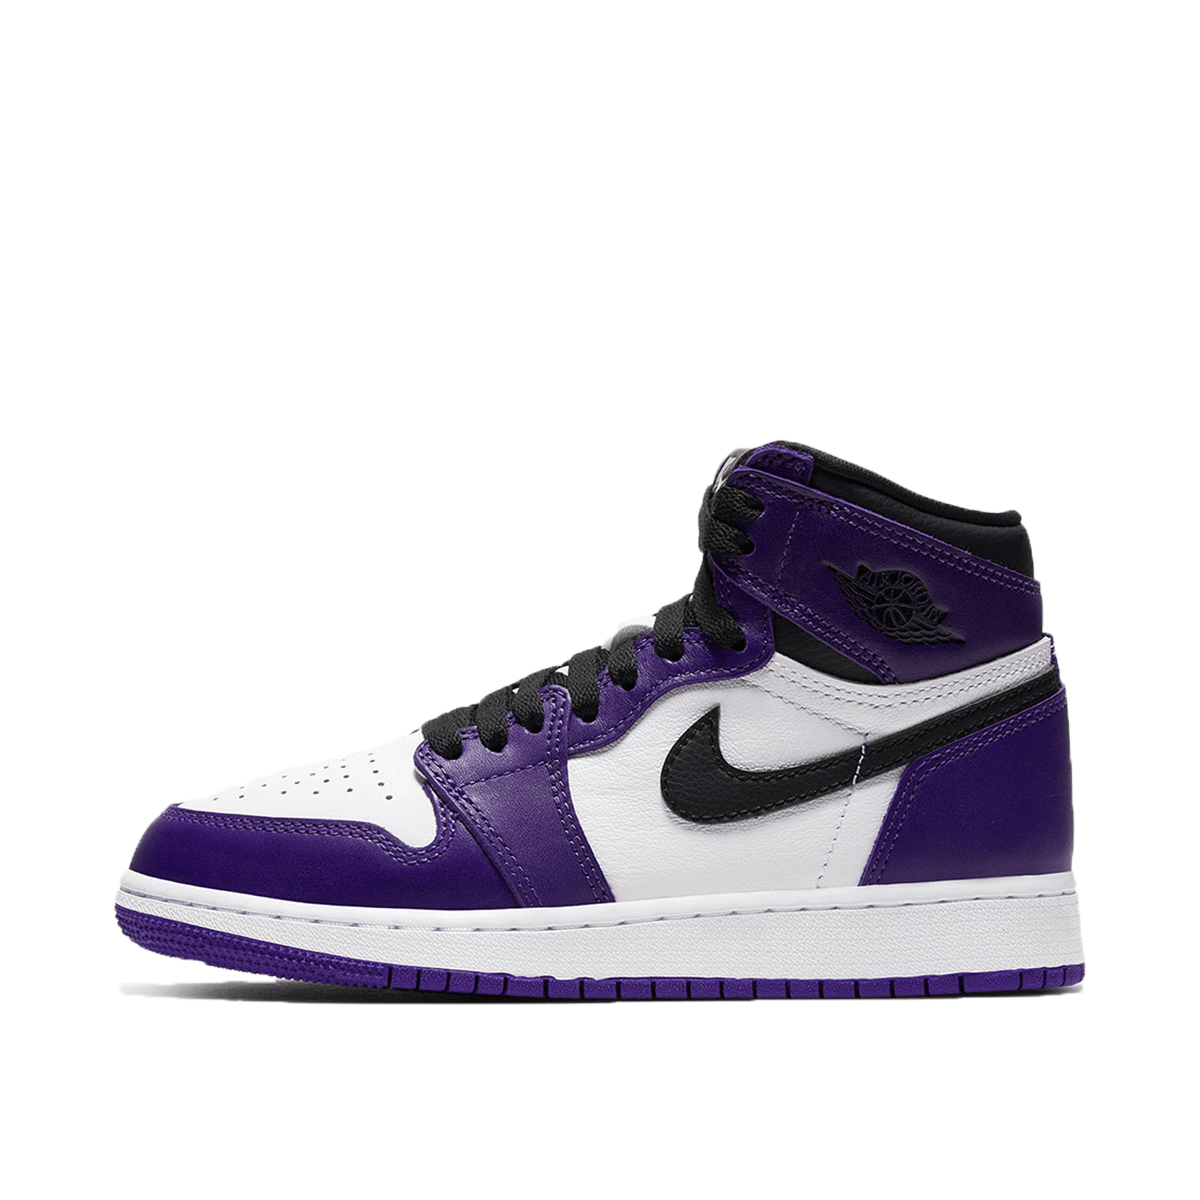 air jordan 1 retro high purple court